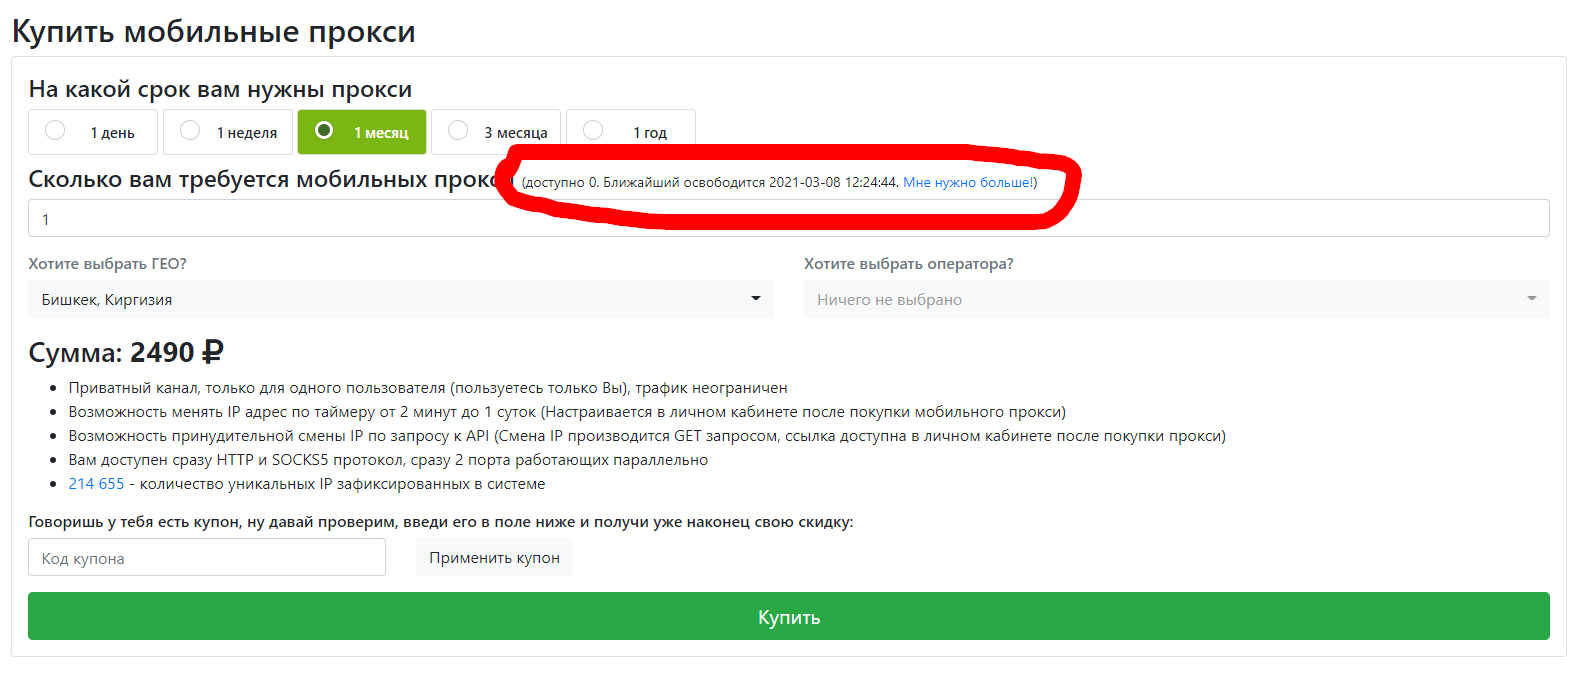 Прокси украина mobilnye proxy kupit ru. Мобильные прокси реклама. Мобильные прокси от компании mobileproxy.Space: обзор сайта.